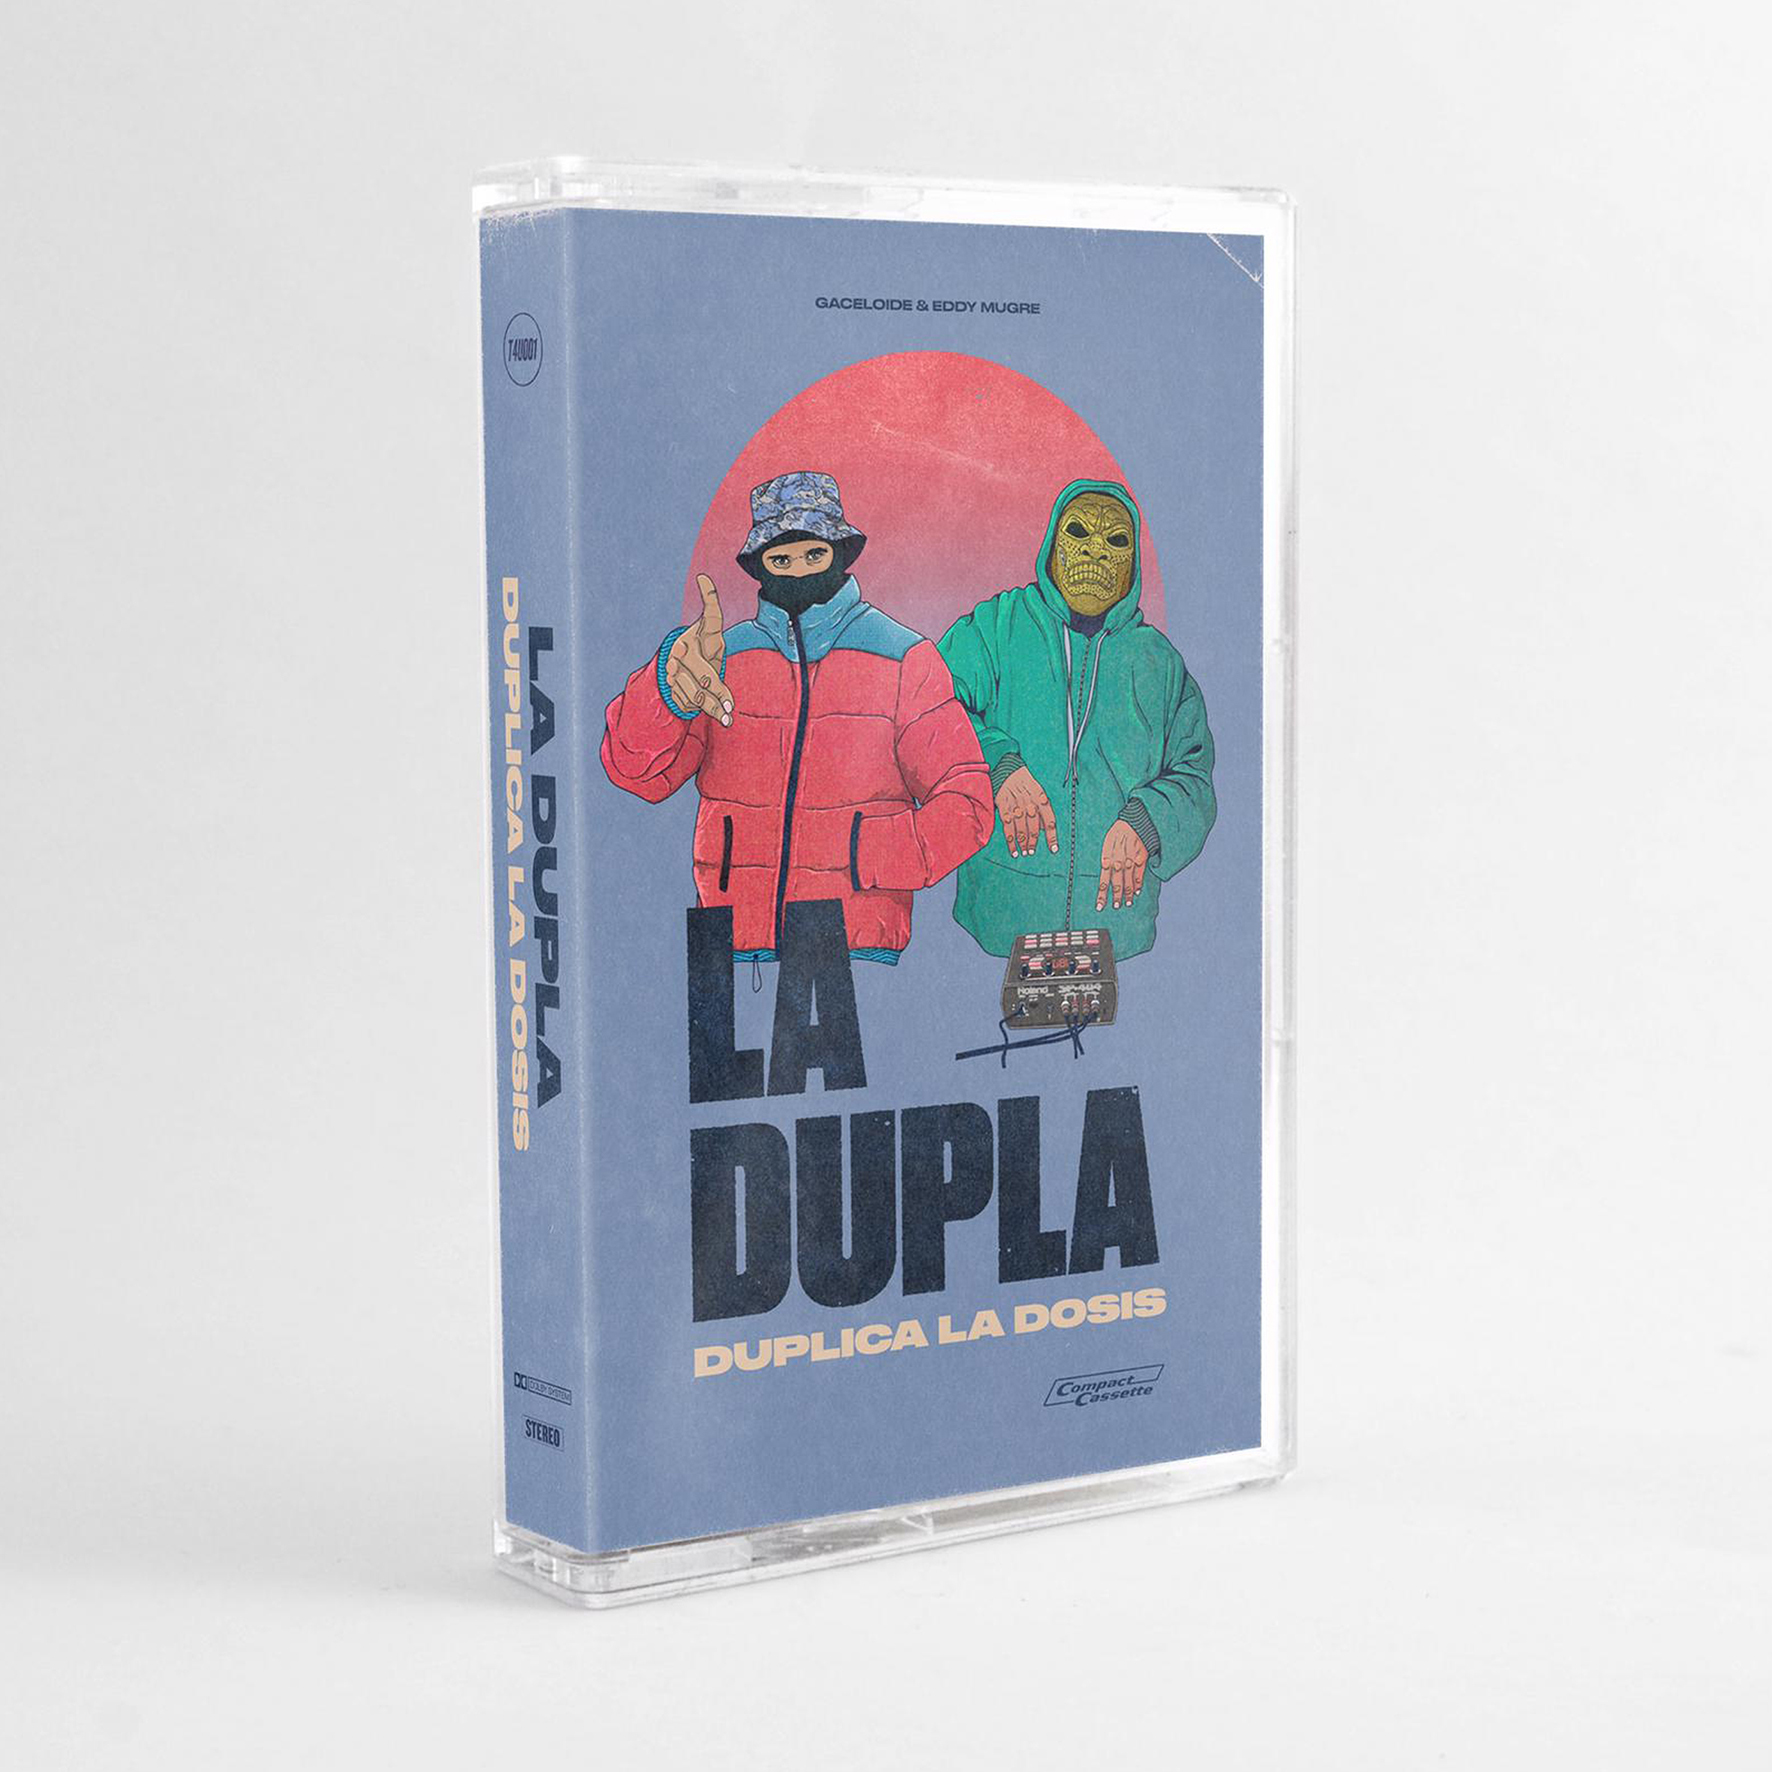 LA DUPLA – Tape Cover